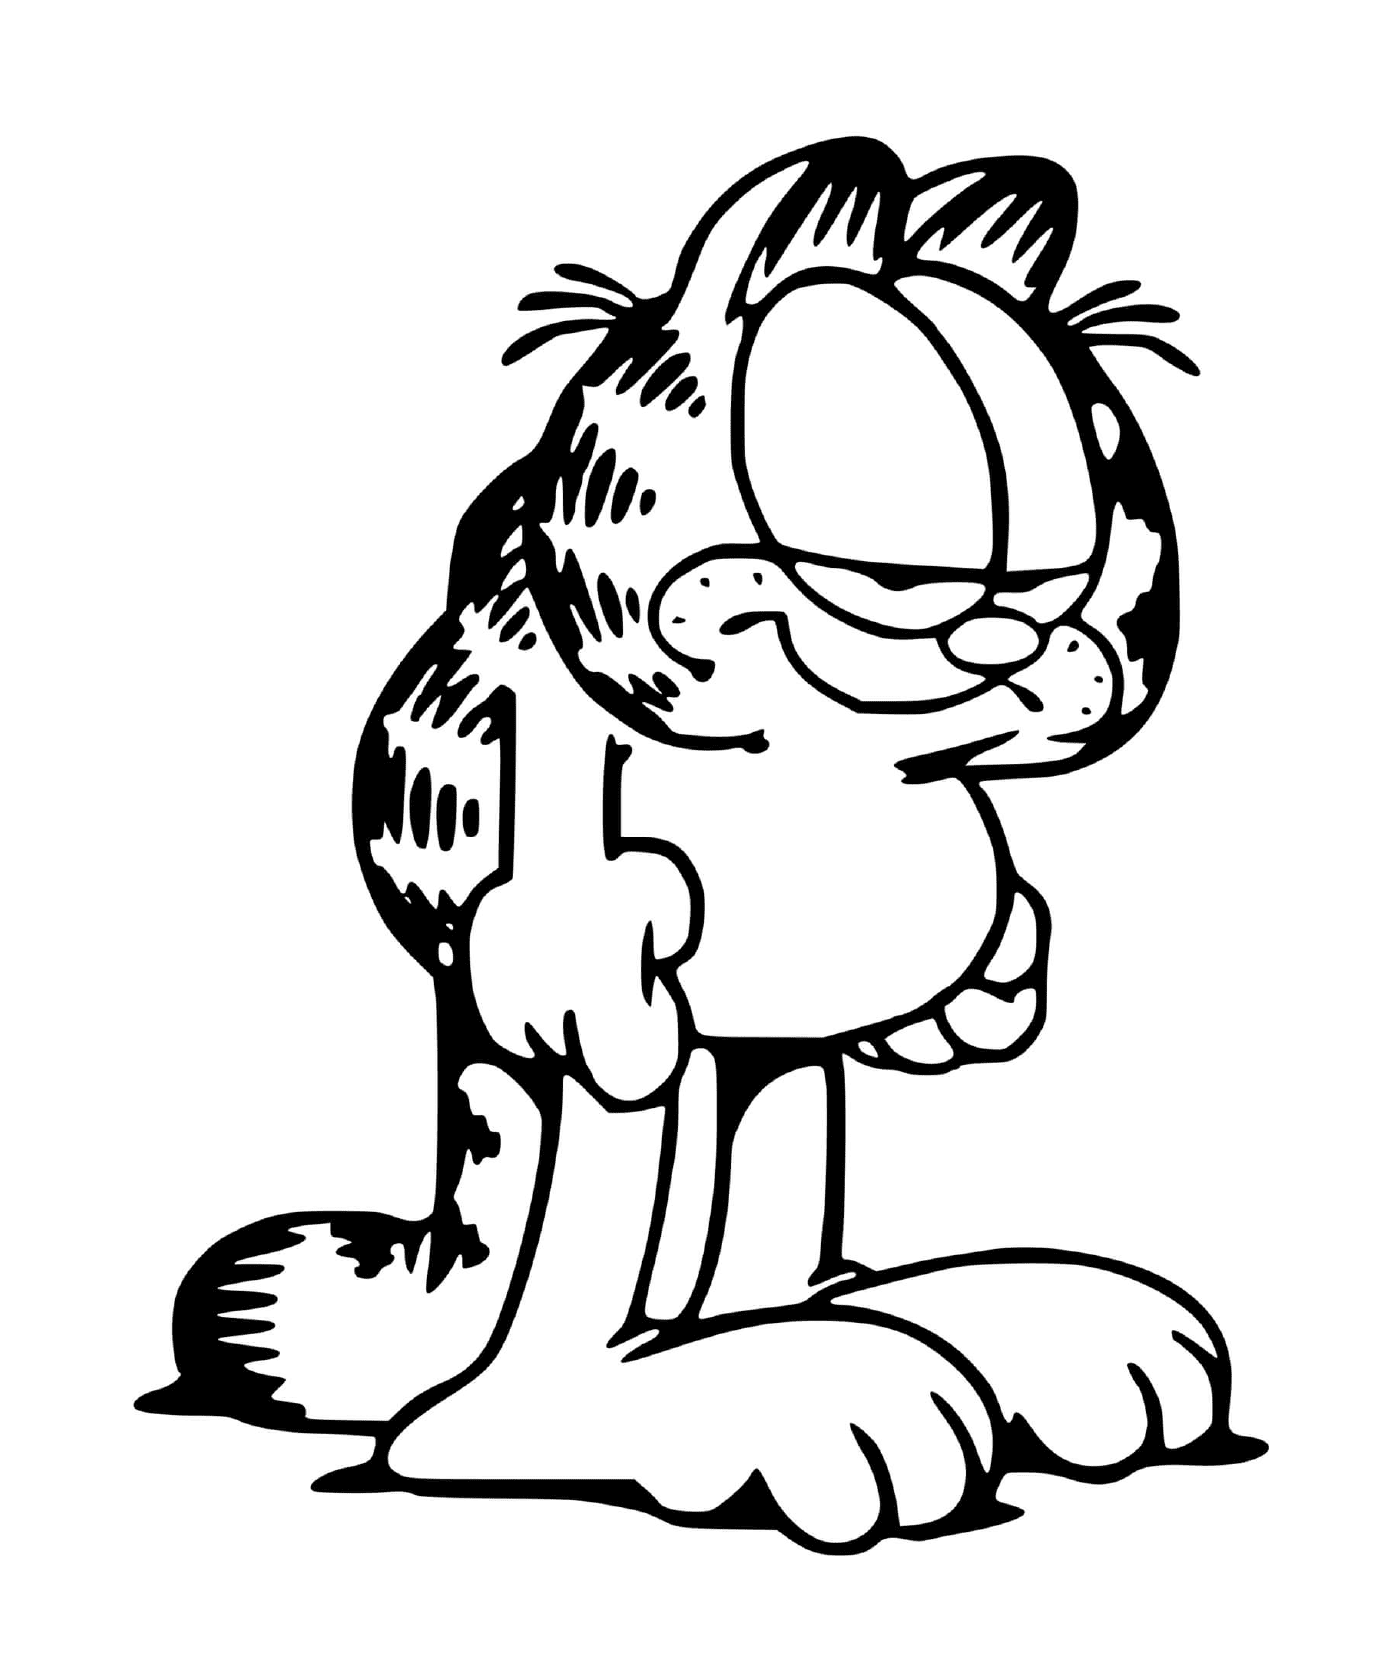  Garfield sempre cansado e exausto 